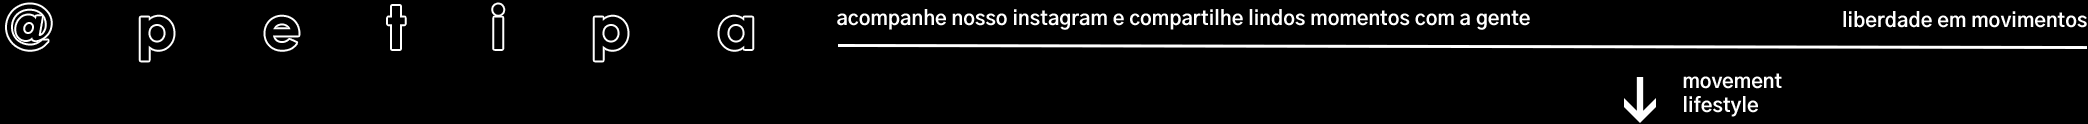 desktop-icone-instagram-preto-definitivoo